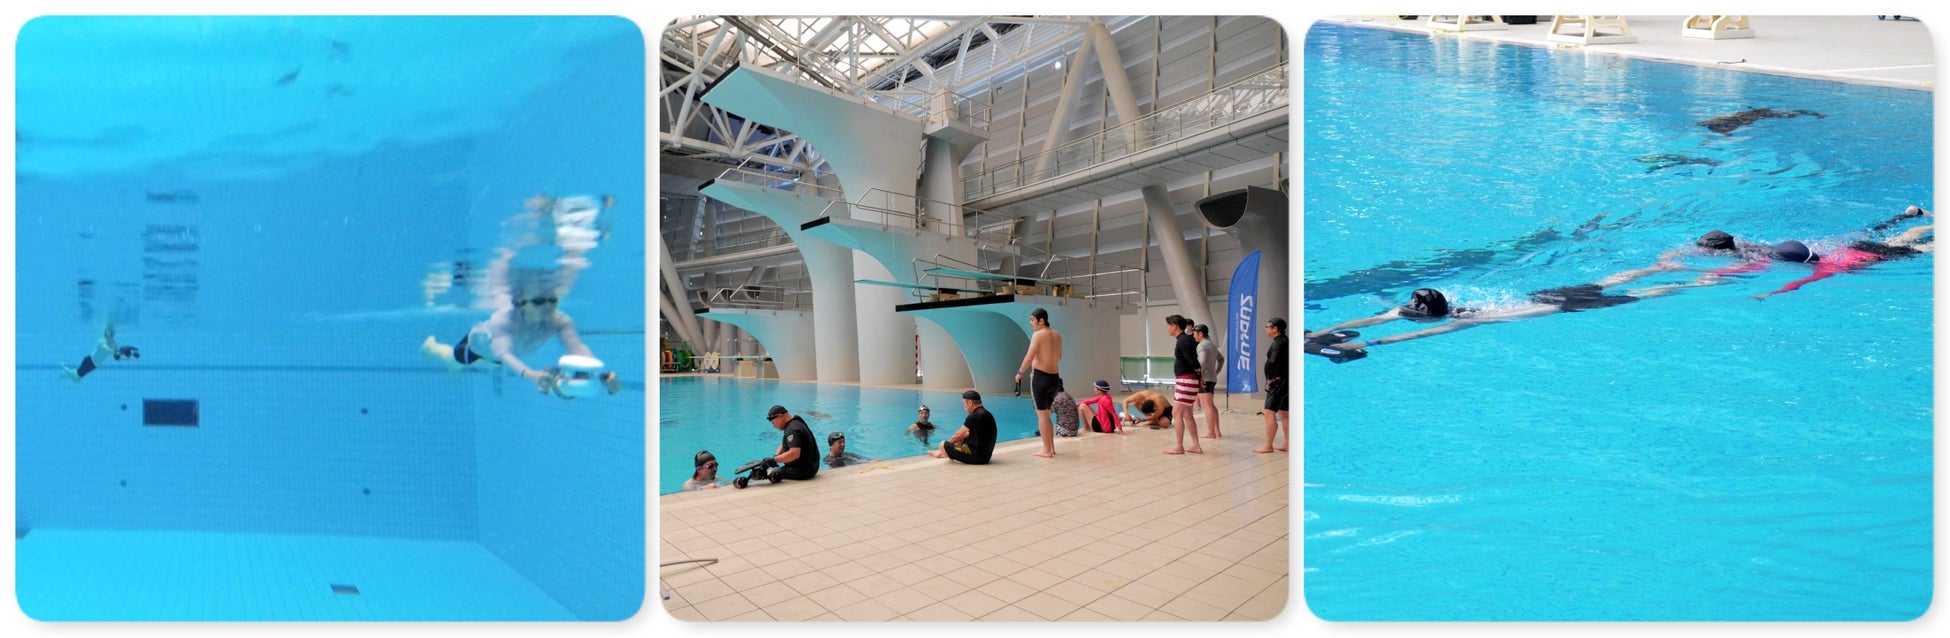 簡単操作で自由に泳げる水中スクーターで新しいアクアフィットネスを体感する無料体験会を7月20日（水）に東京都江東区のプールで初開催のサブ画像3_別会場で開催した過去の体験会